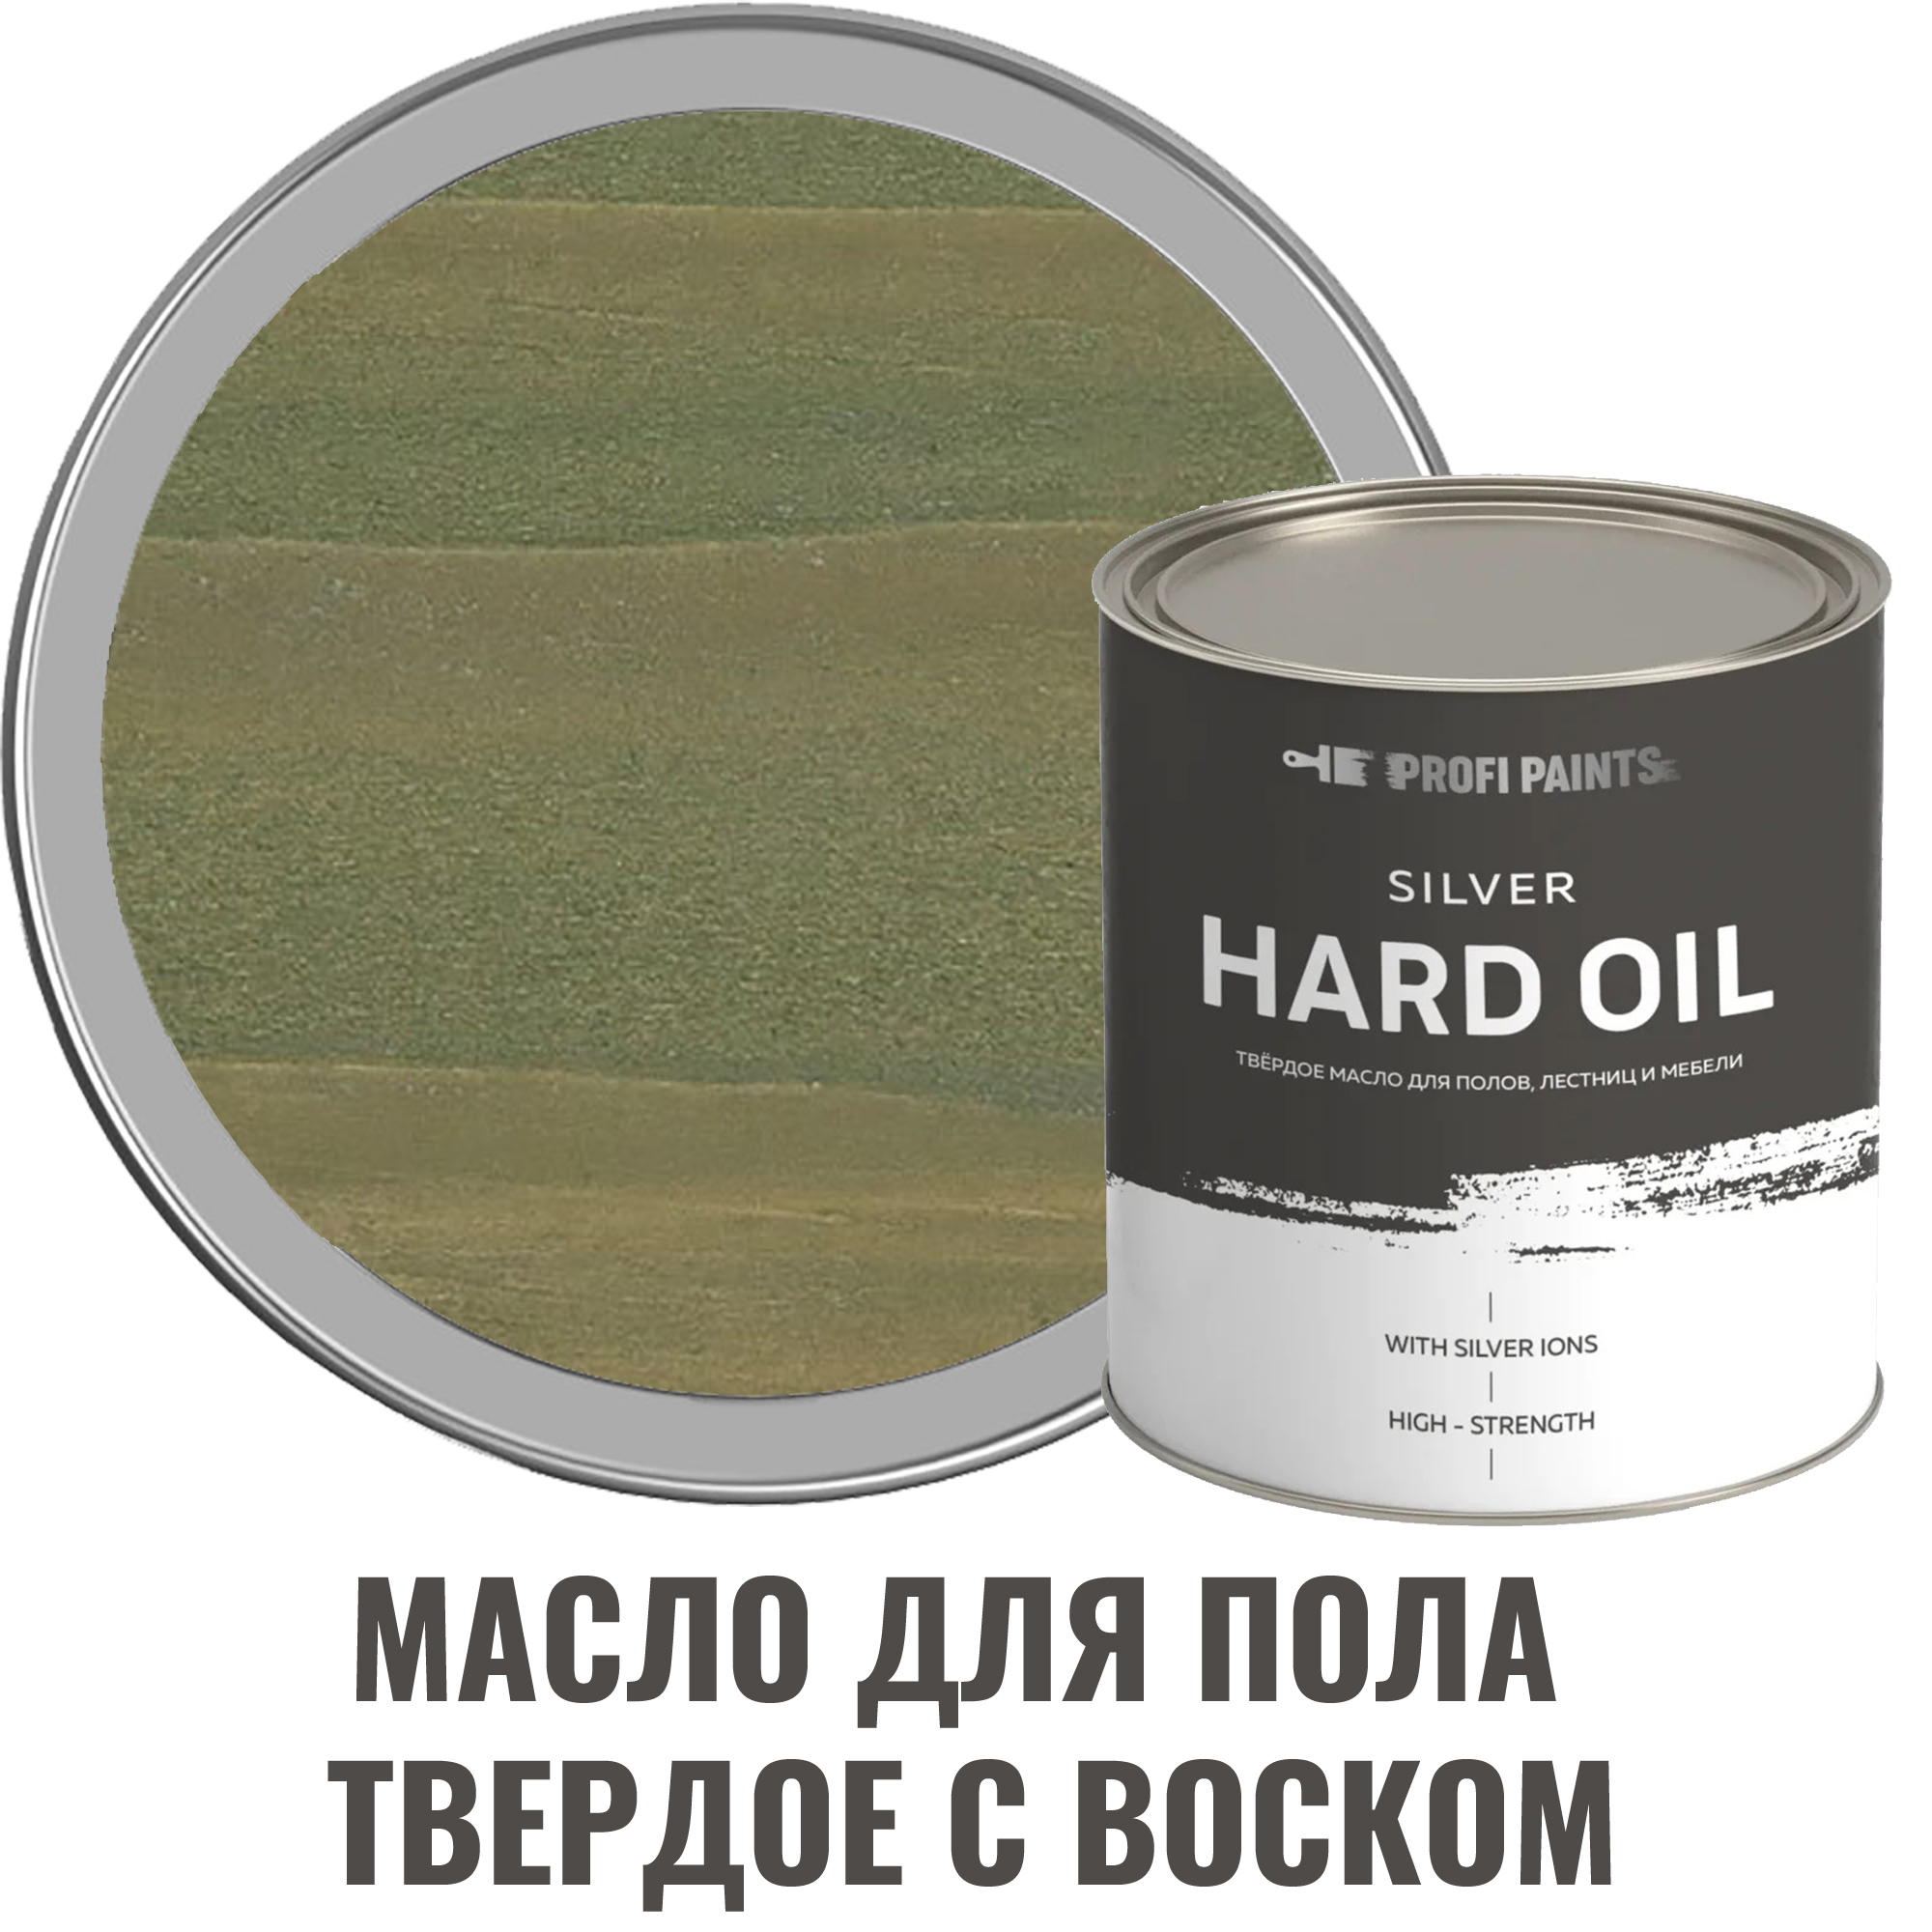 91095462 Масло для пола 10727_D Silver Hard Oil цвет зеленый 0.9 л STLM-0481820 PROFIPAINTS